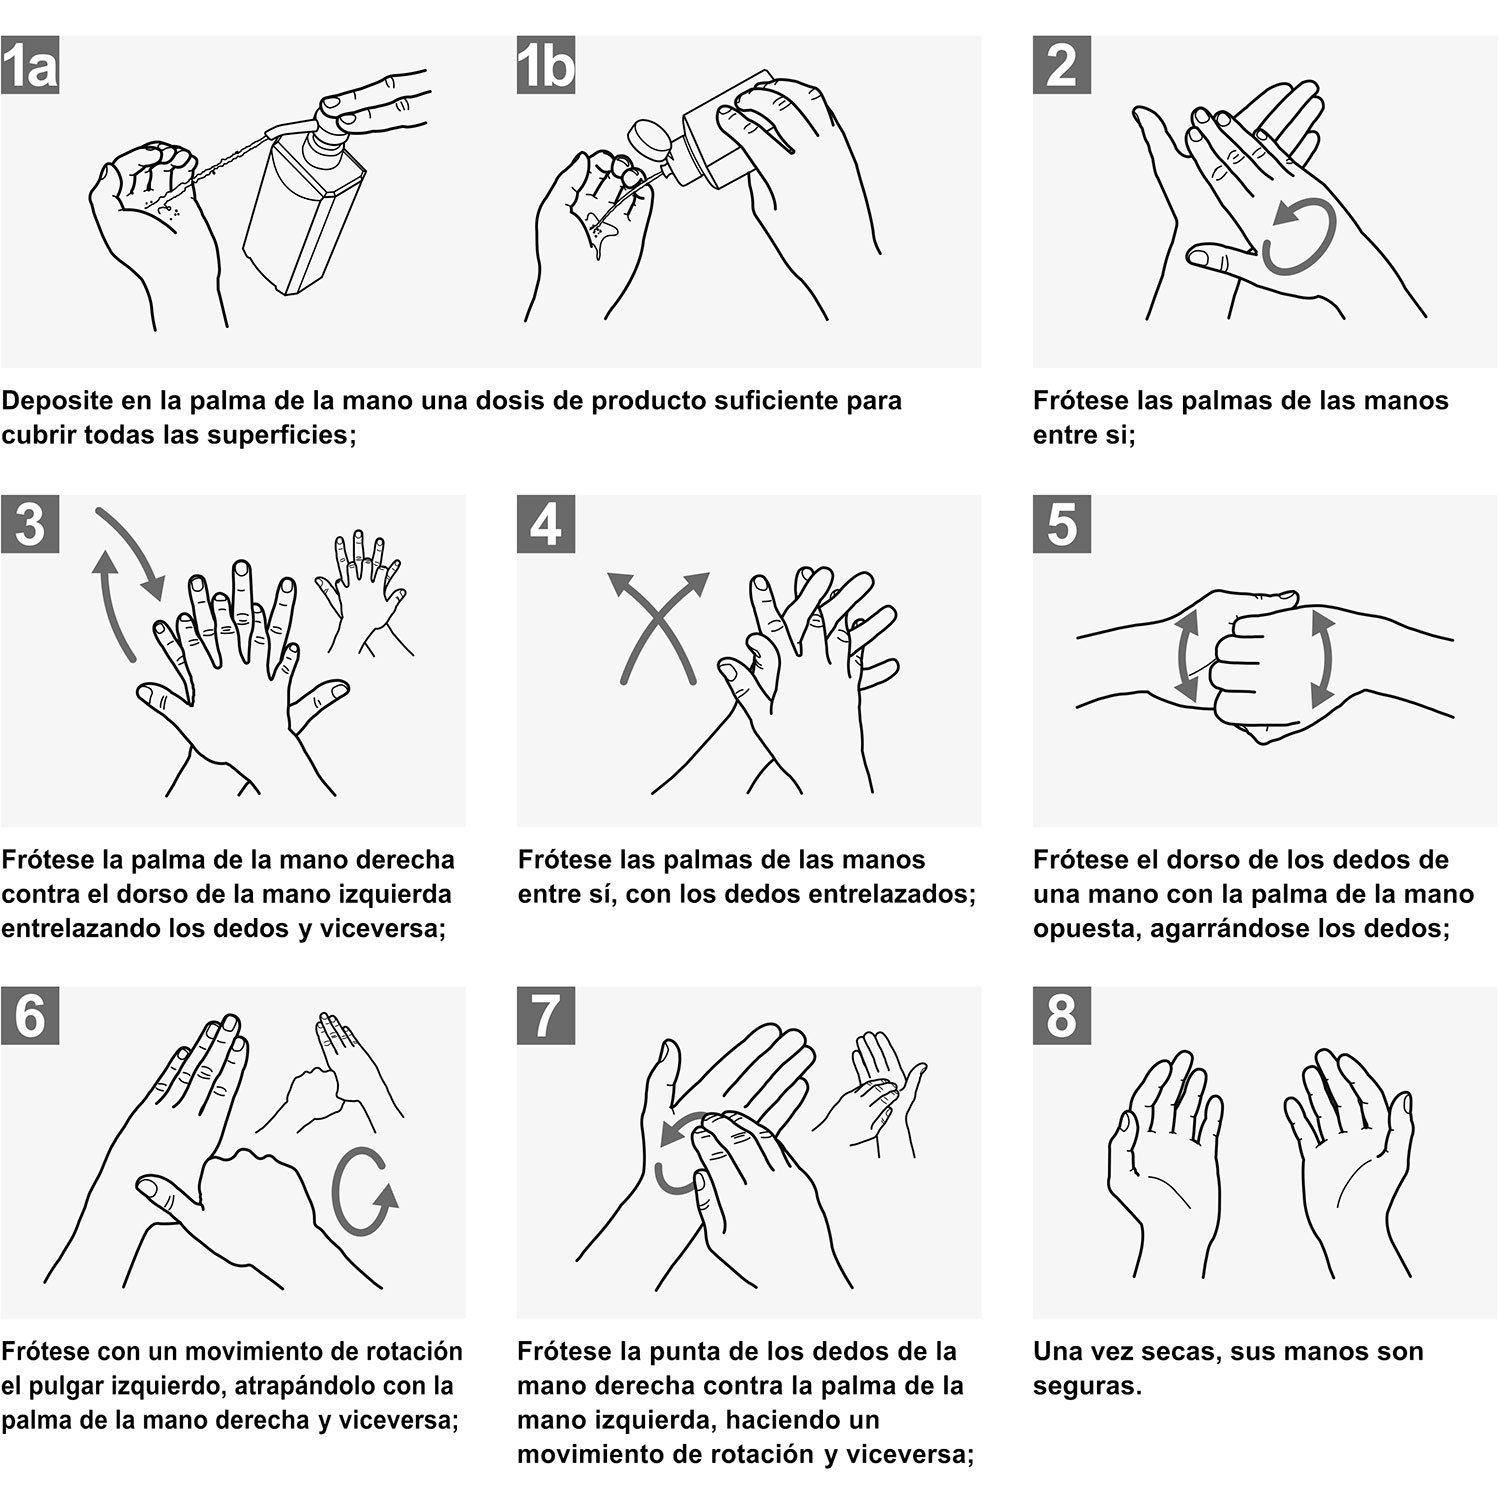 como desinfectar las manos